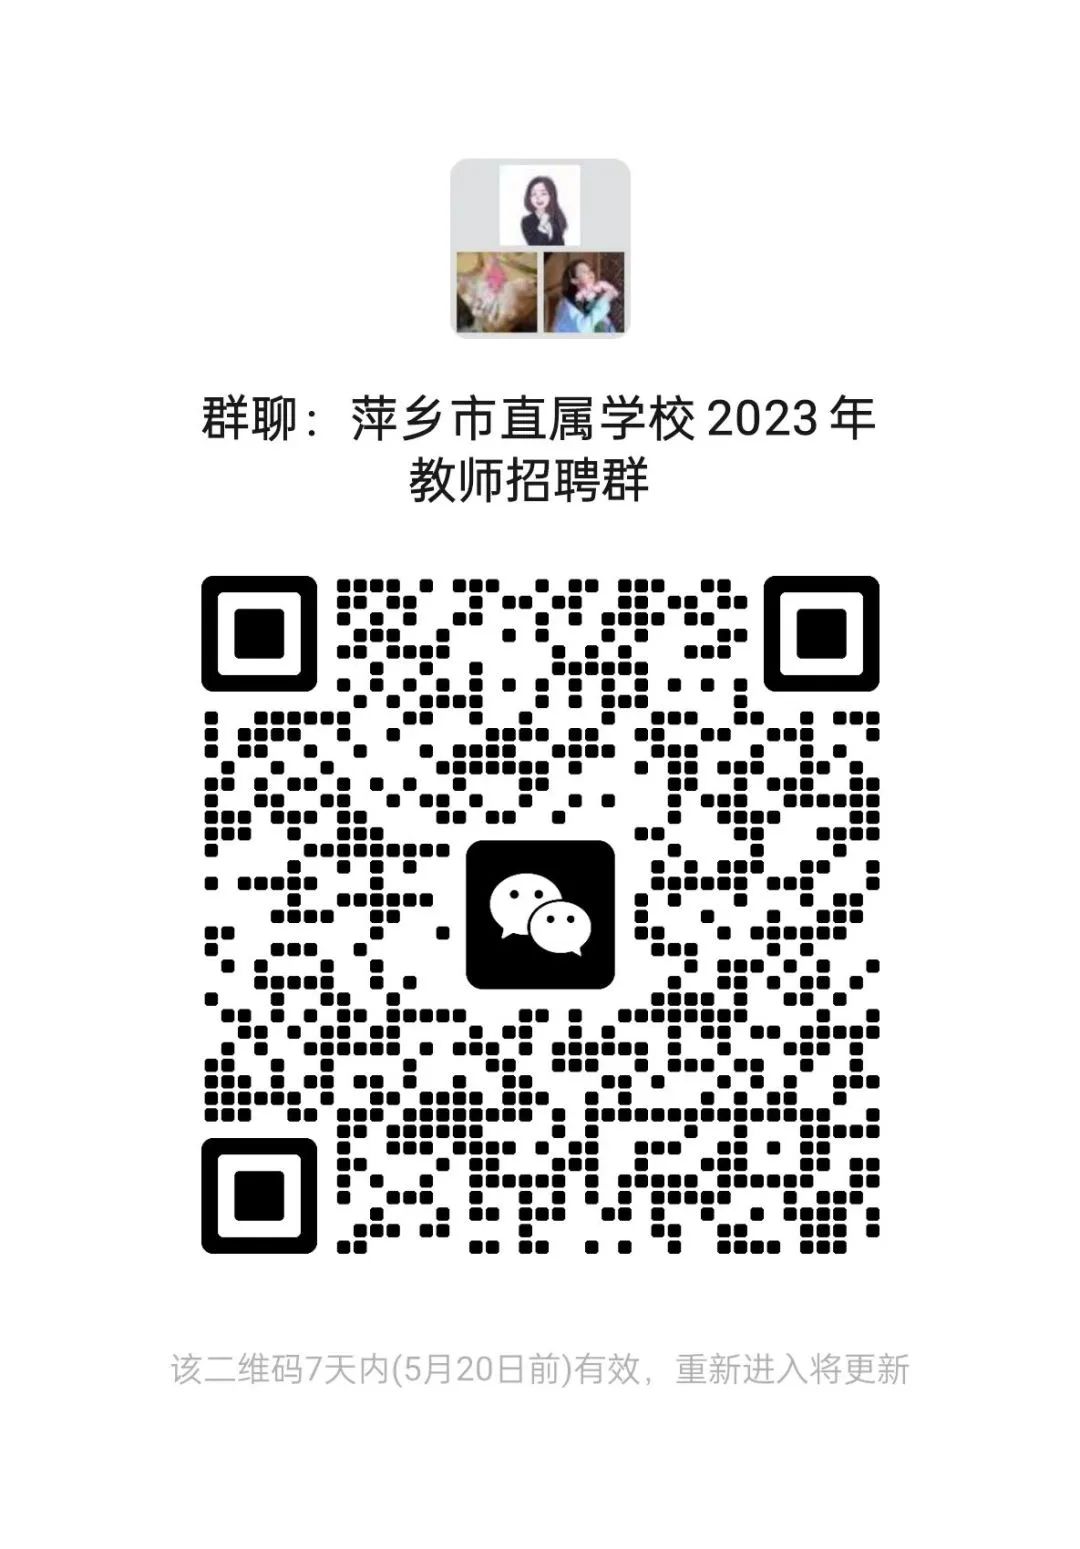 萍乡市市直学校2023年教师招聘